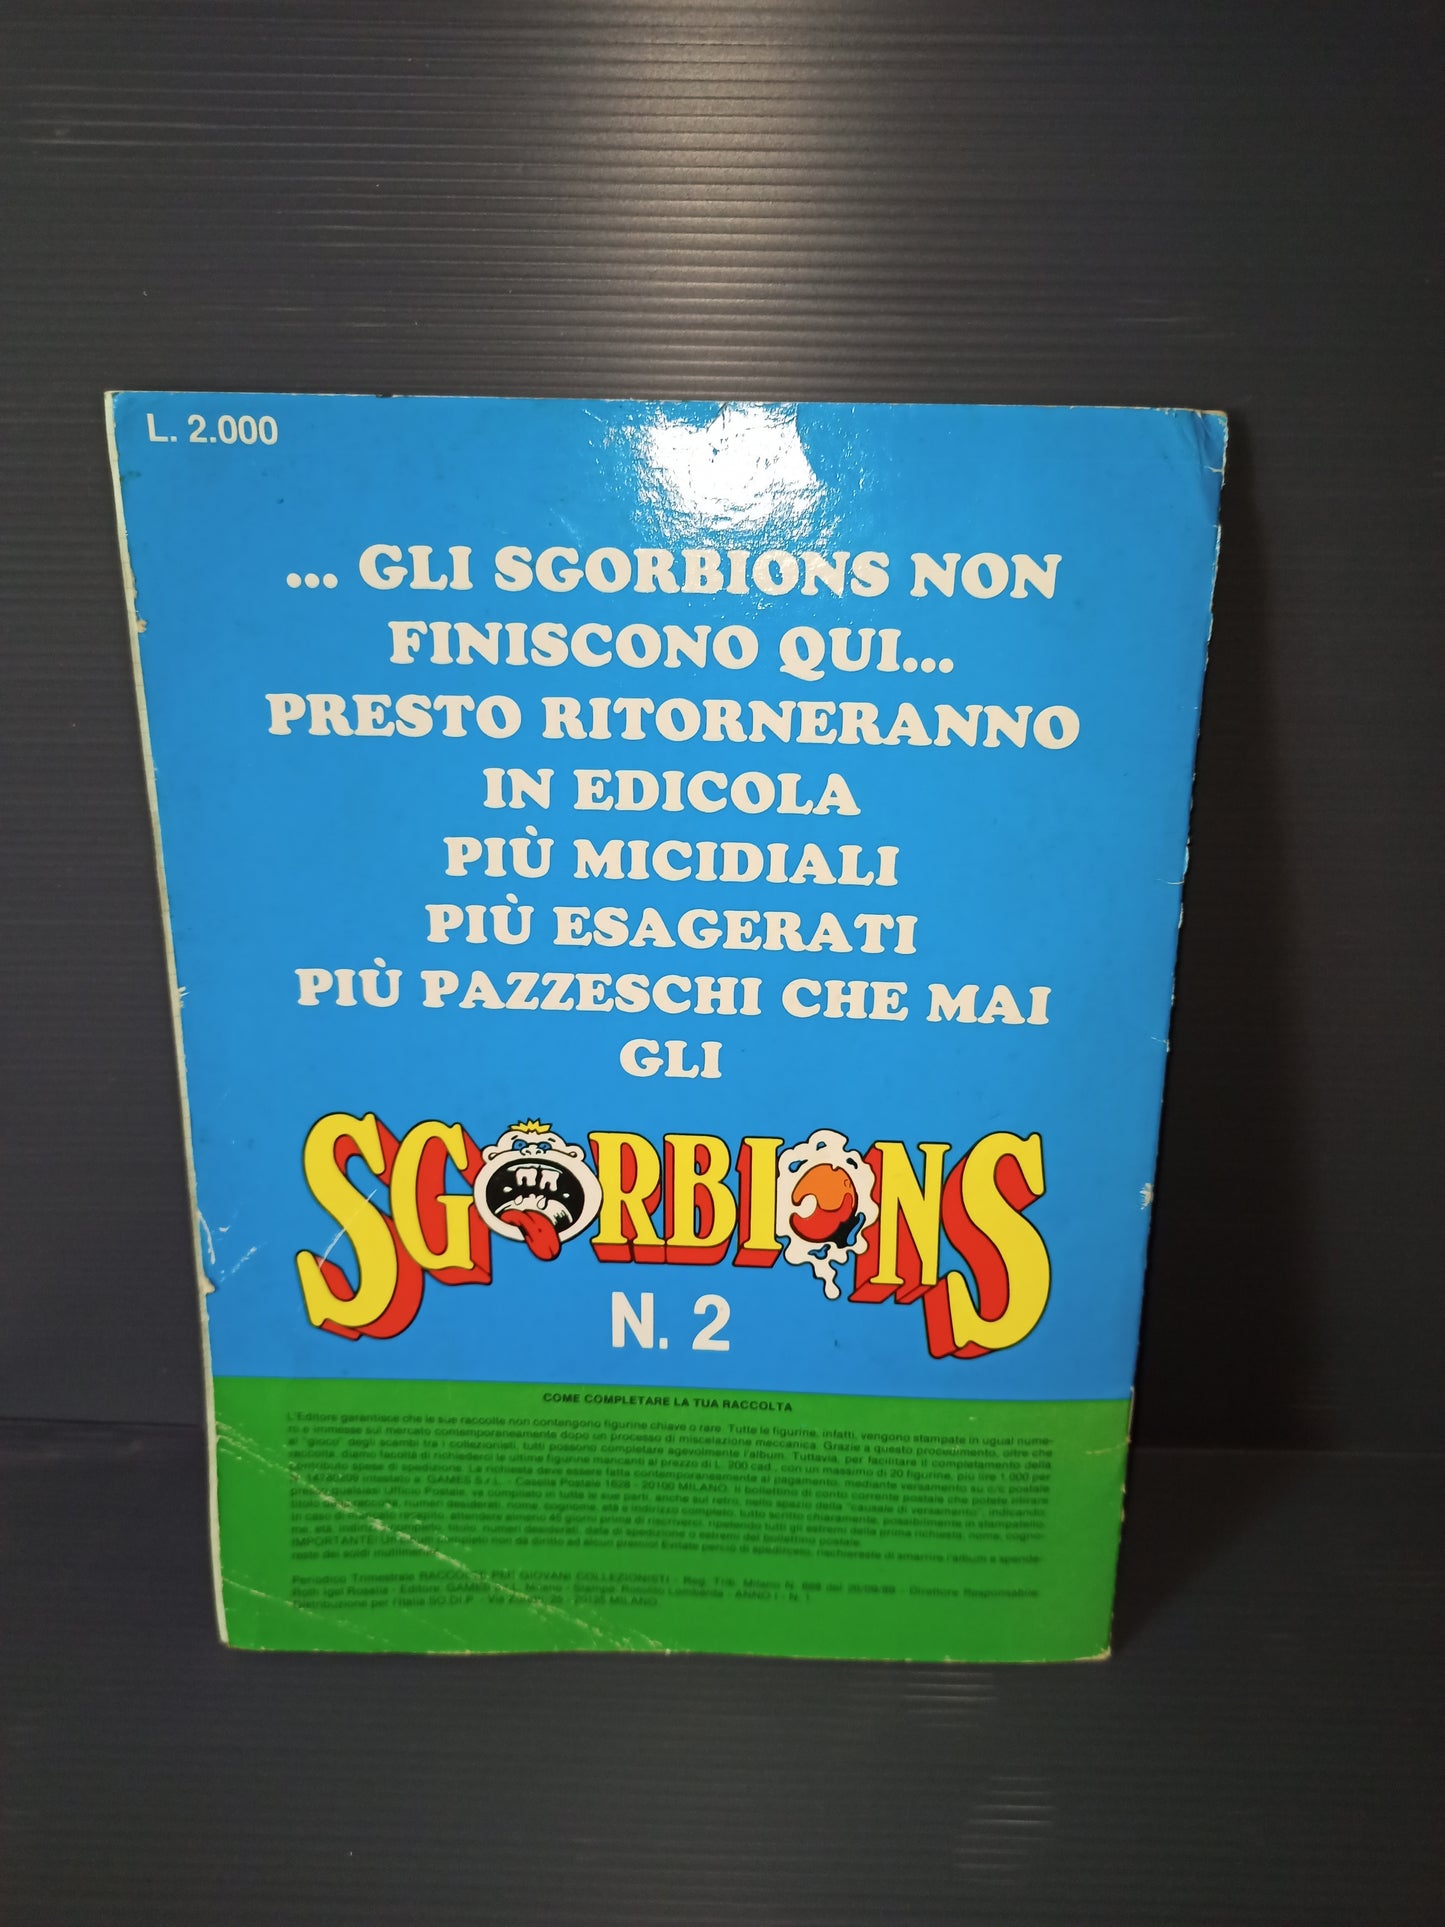 Album Le bande degli Sgorbions Topps 1 serie, originale anni 90